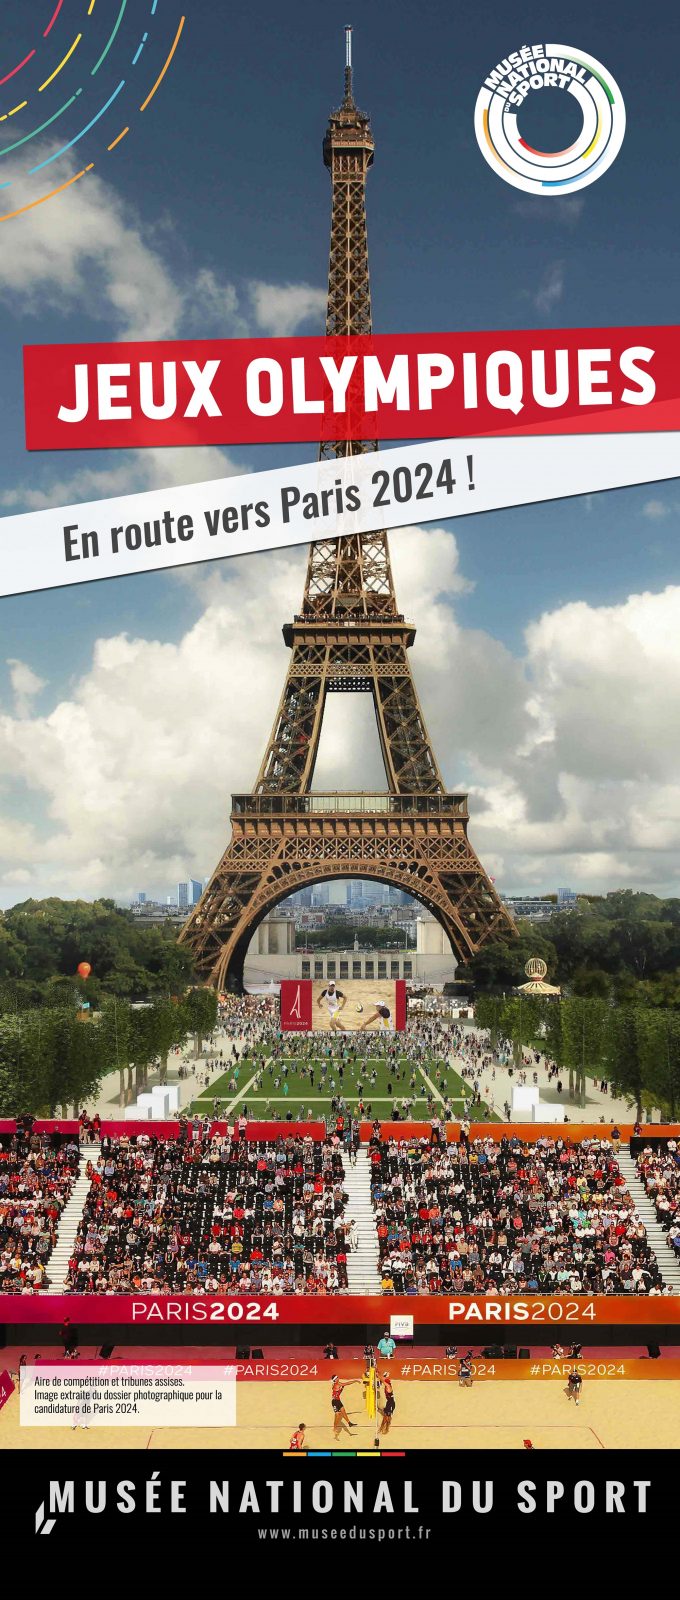 Exposition Volvic: Jeux Olympiques, en route vers Paris 2024